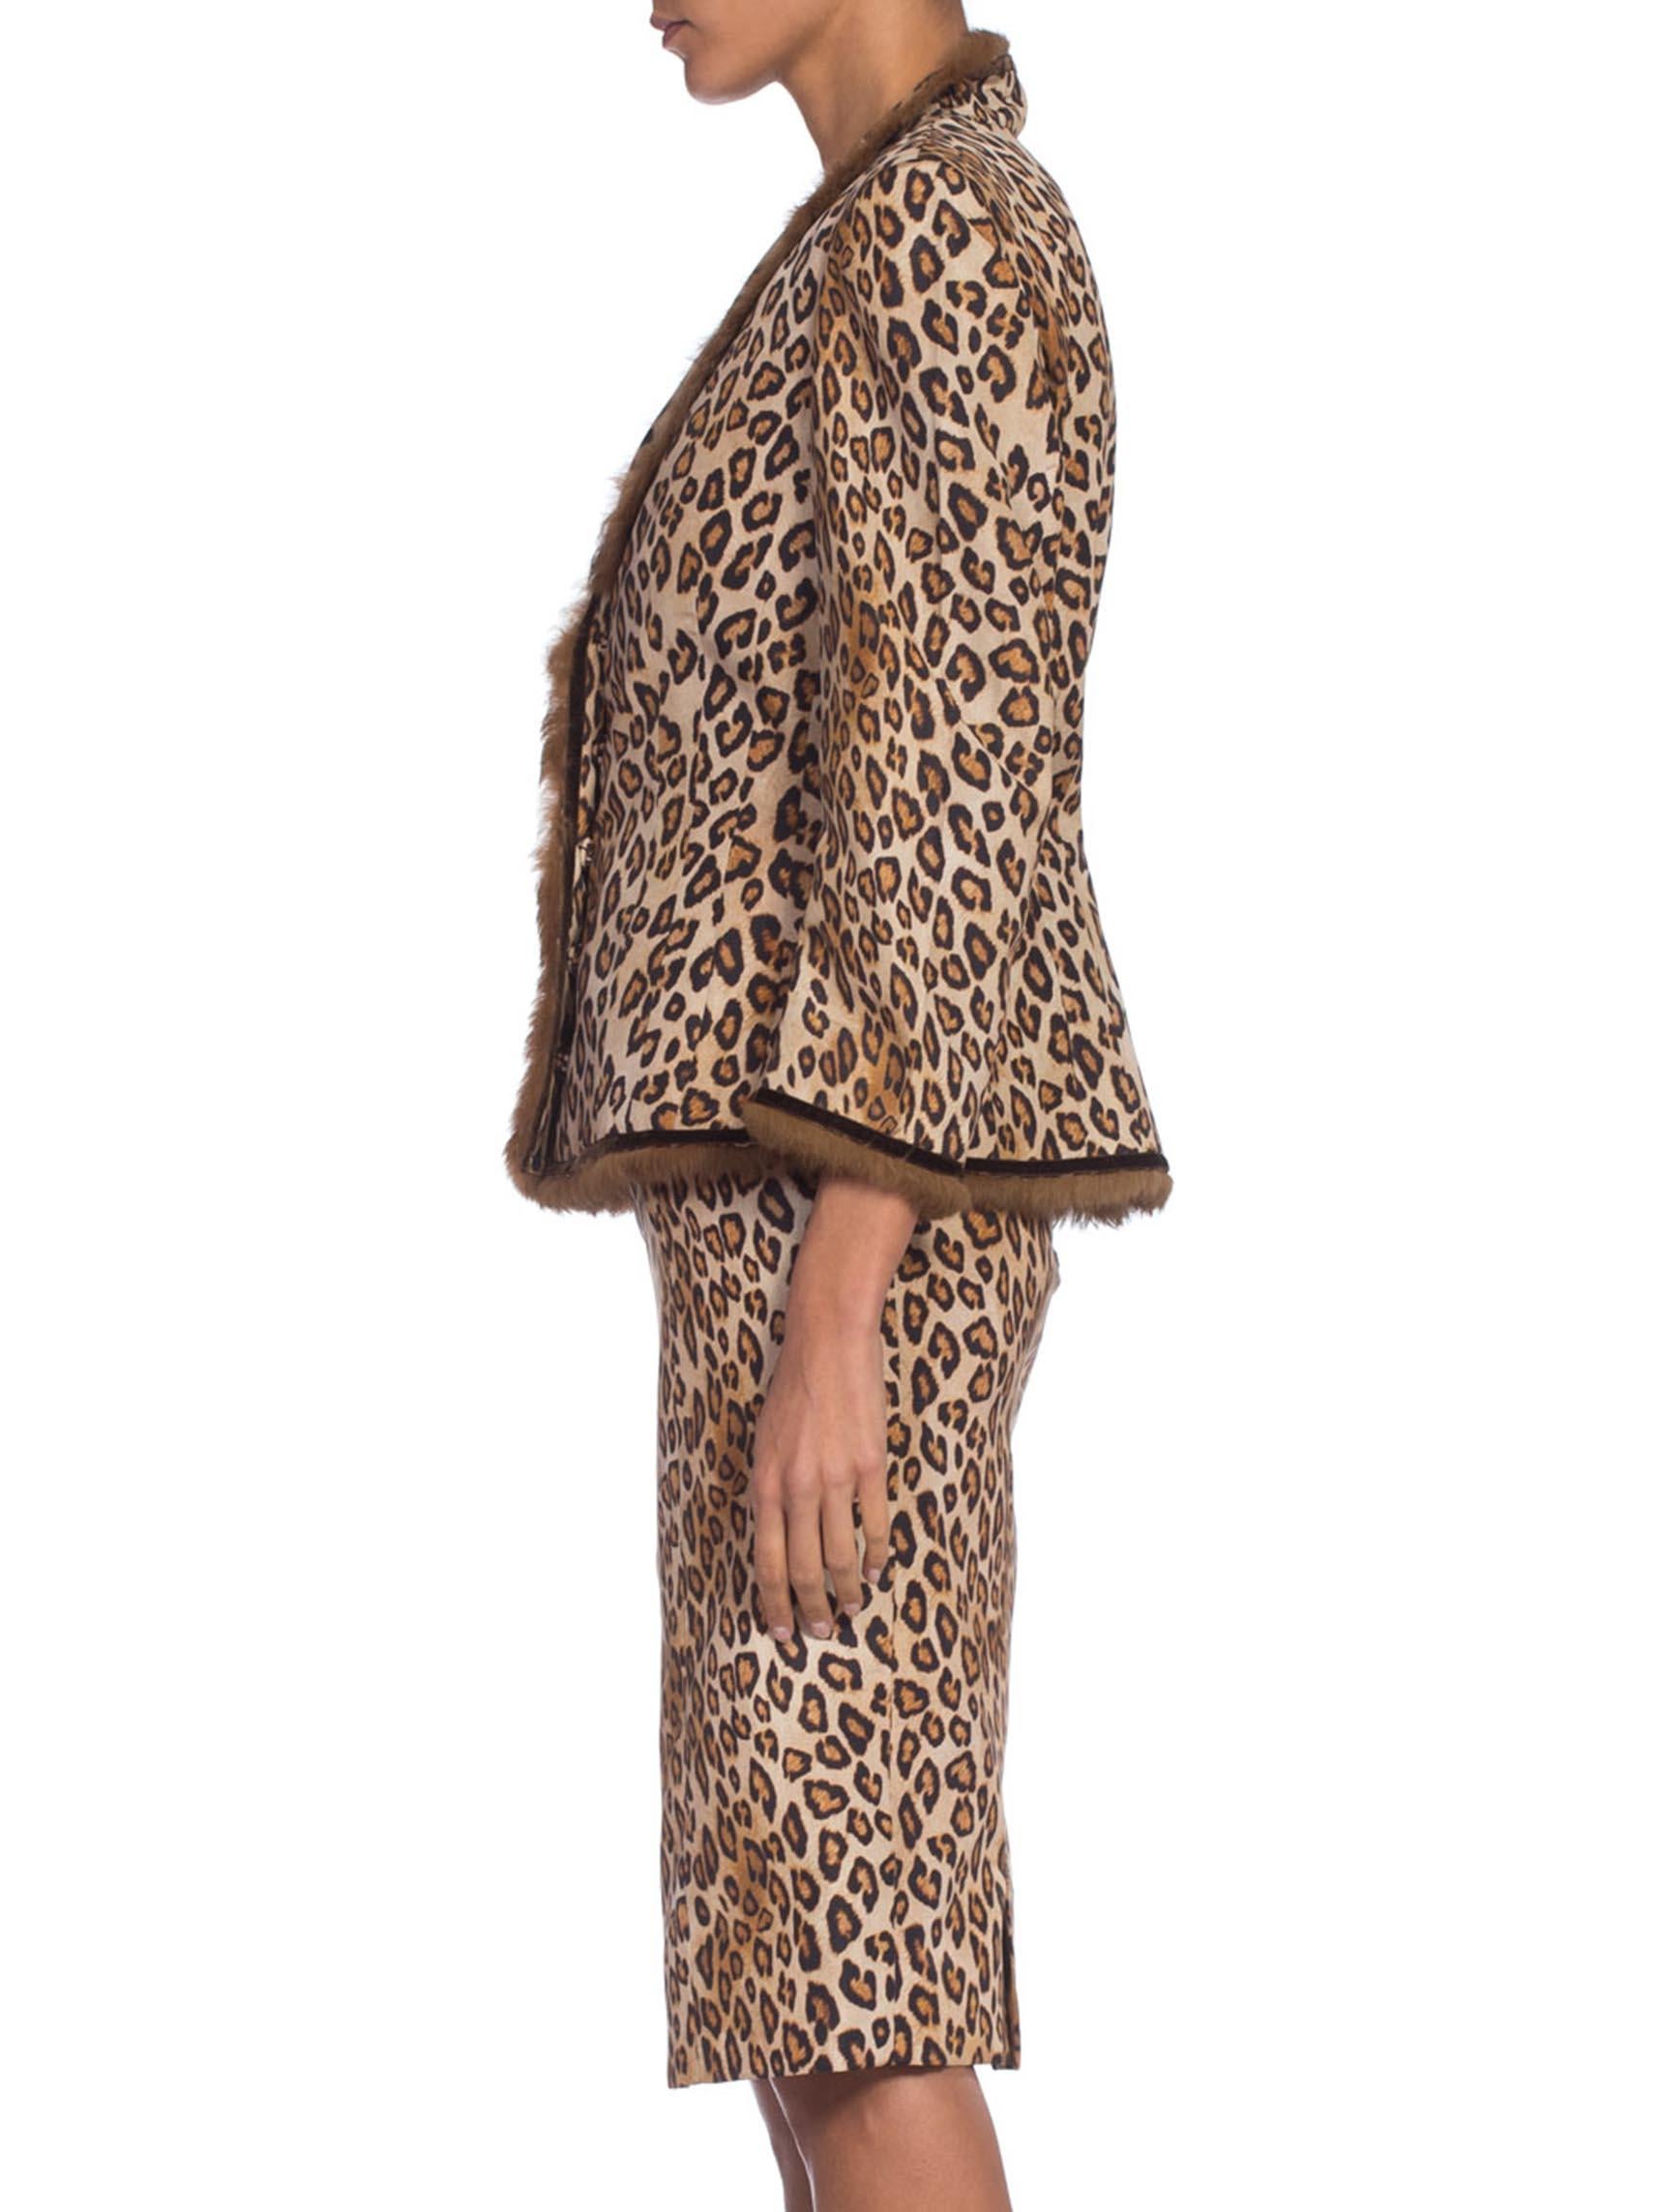 2000S ALEXANDER MCQUEEN Leopard Print Silk Taffeta Mink Trimmed Jacket & Dress Ensemble